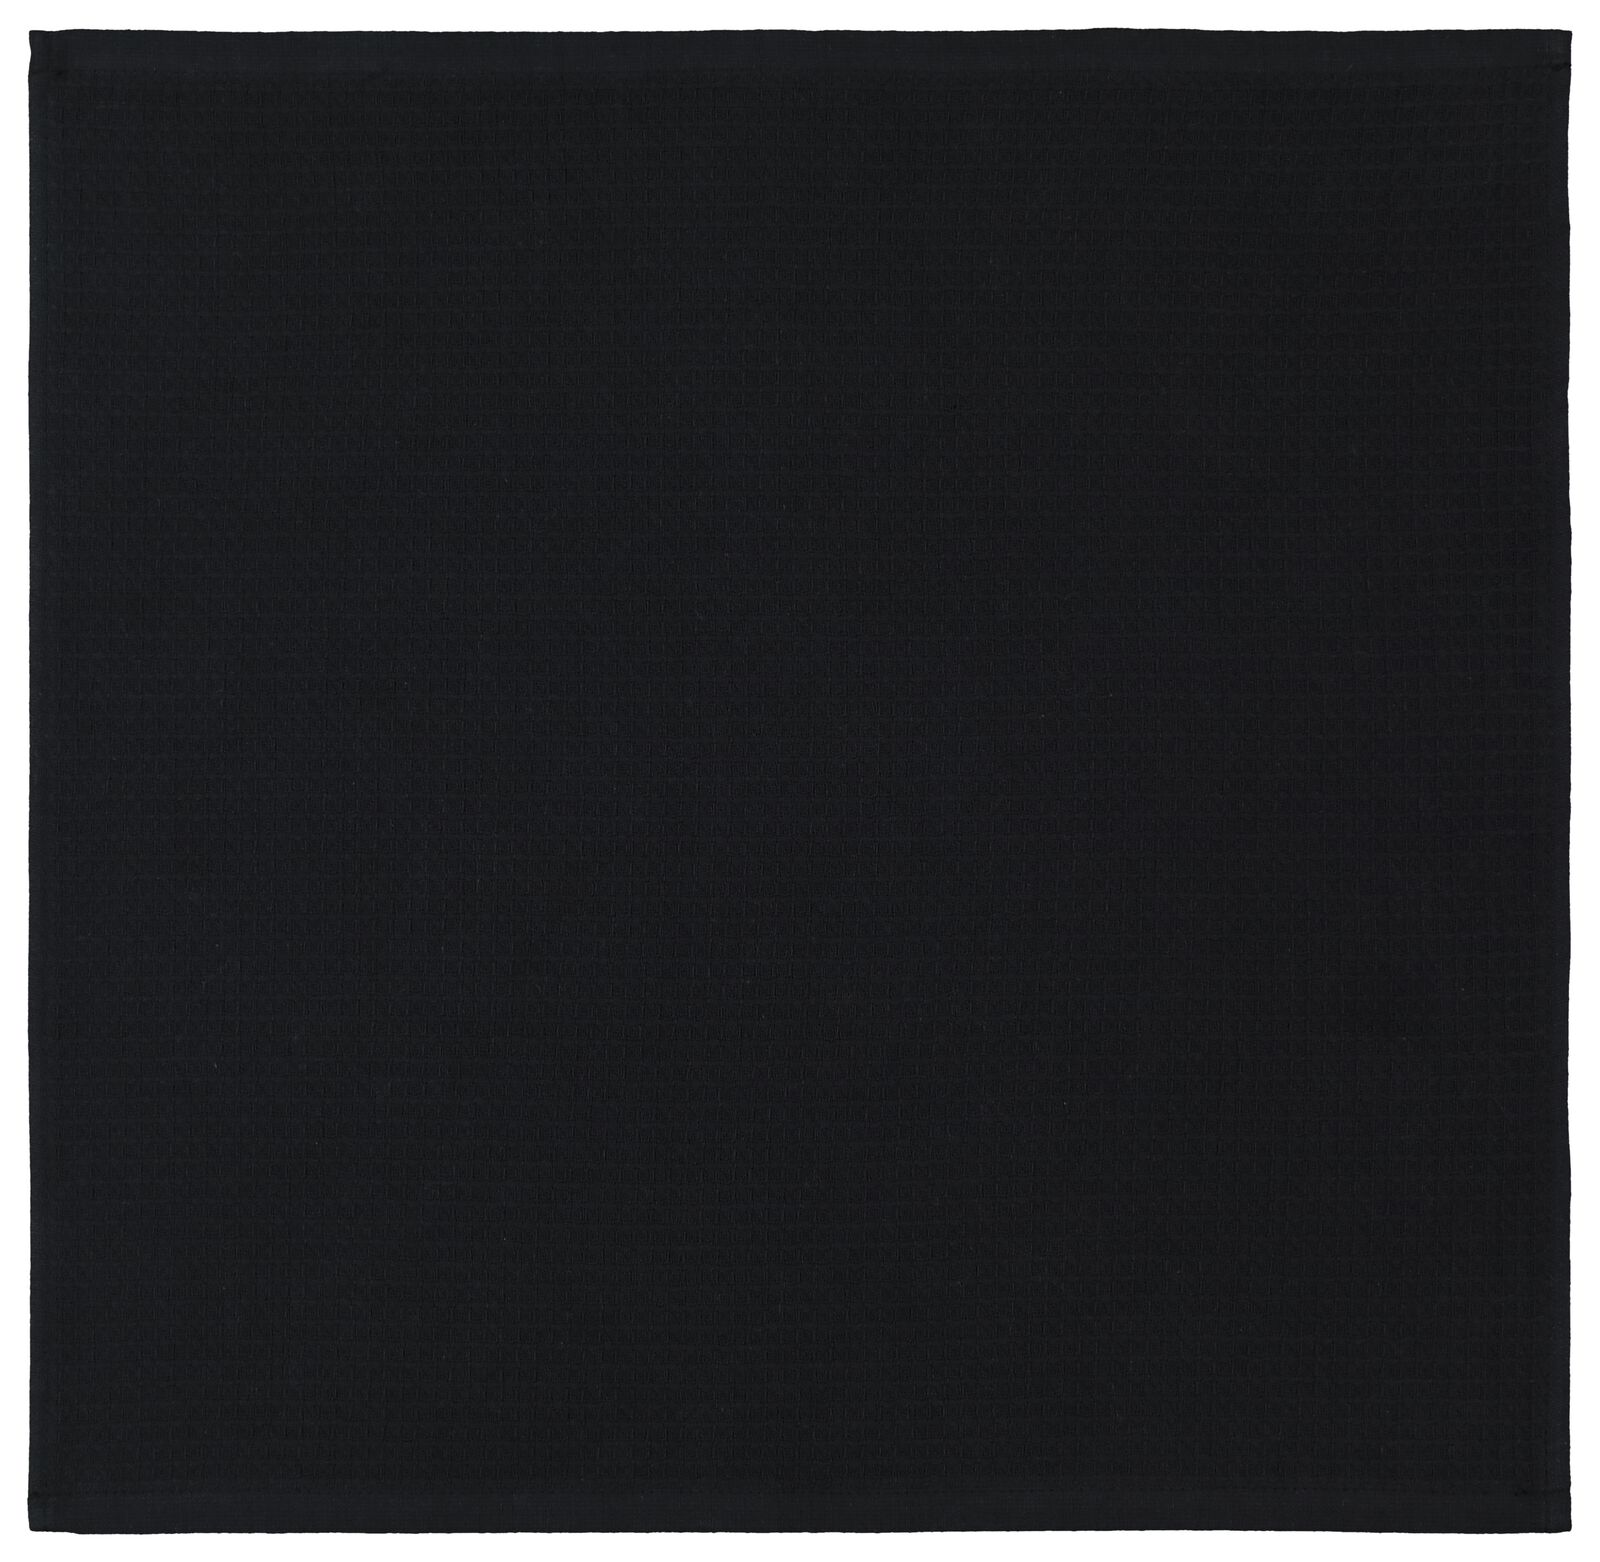 Küchenhandtuch, 50 x 50 cm, Baumwolle, Waffelstruktur, schwarz - 5490039 - HEMA